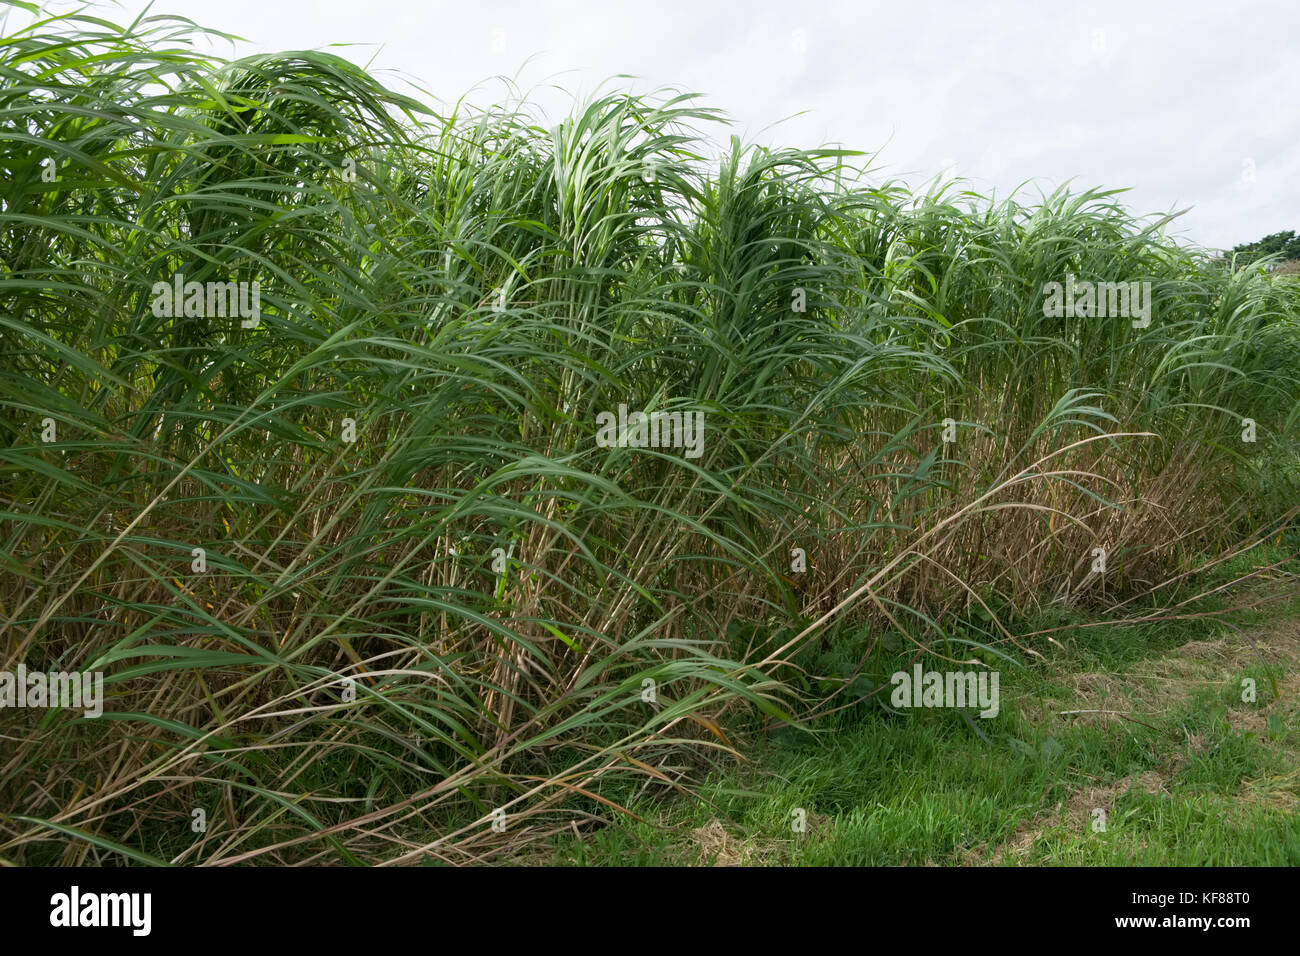 Miscanthus (im Allgemeinen als Elephant Grass bekannt) ist eine ertragreiche Energieernte, die über 3 Meter groß wird, Bambus ähnelt und jede Ernte produziert Stockfoto